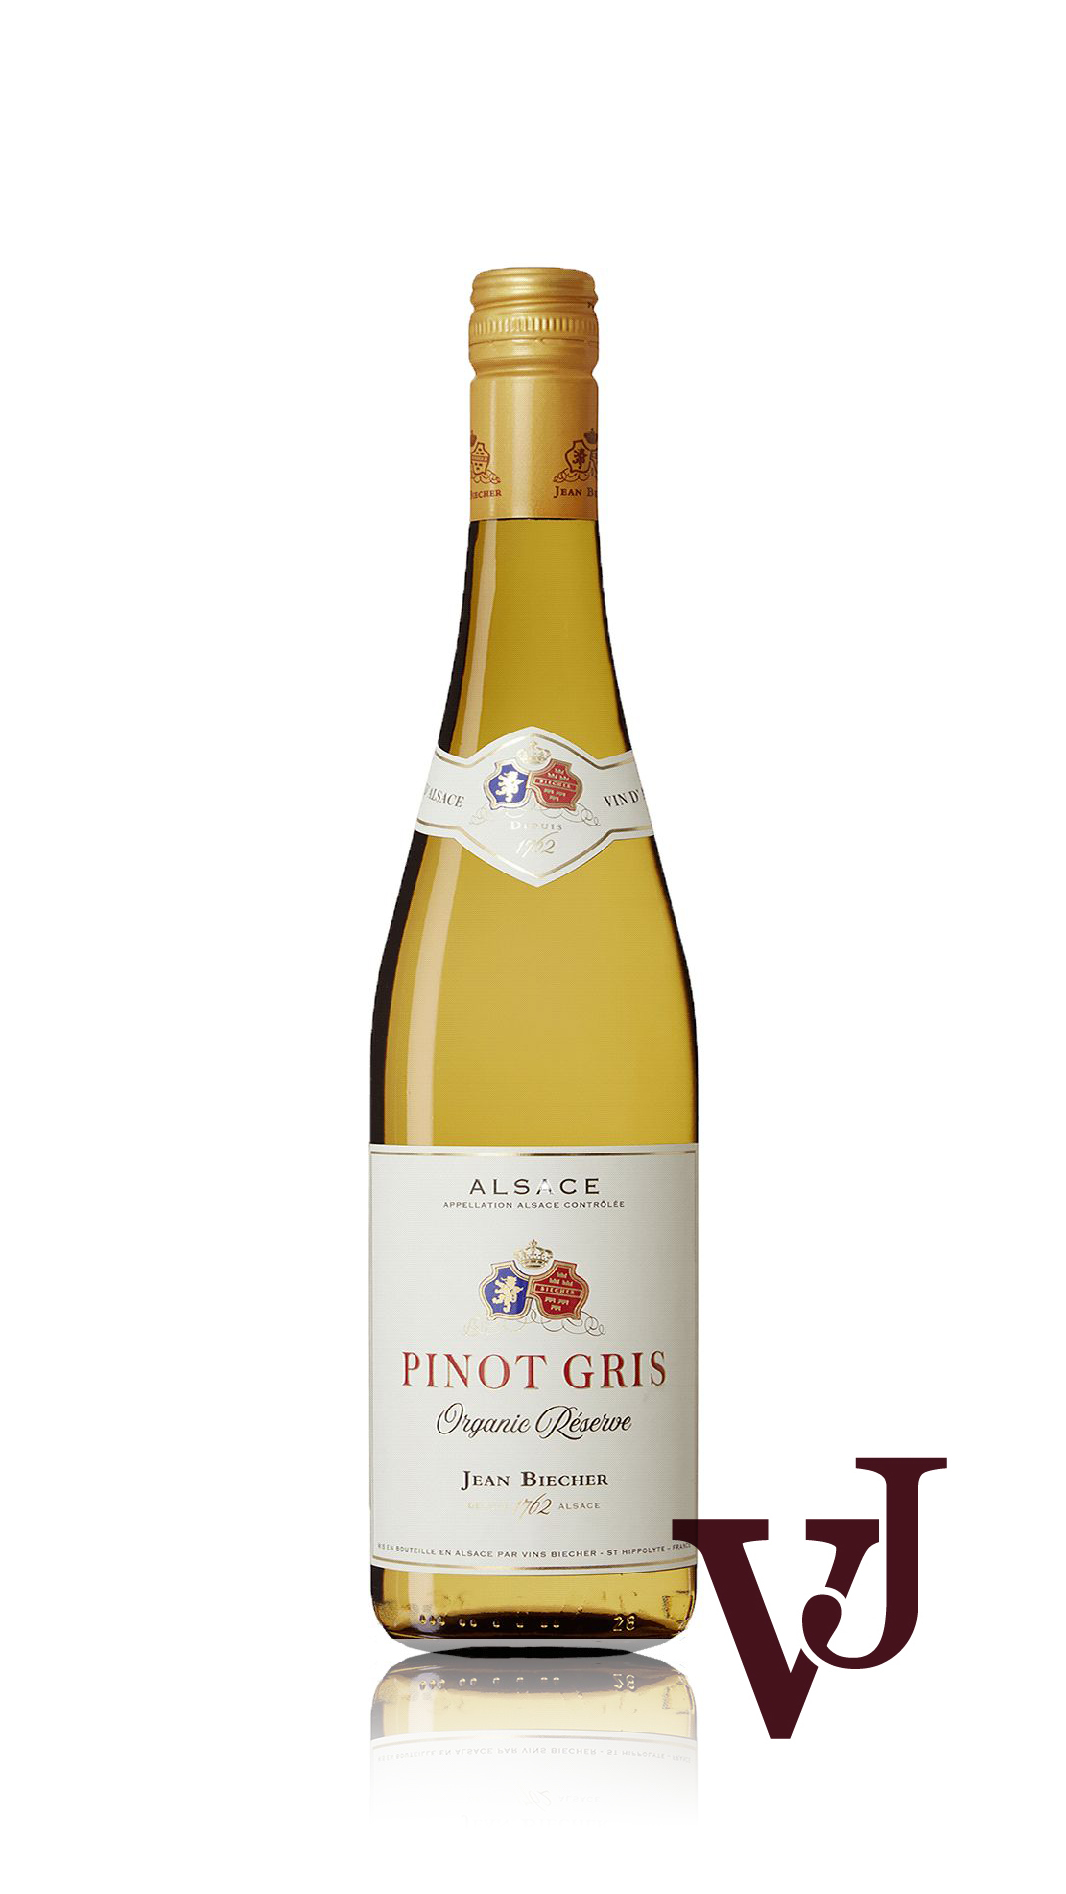 Vitt Vin - Jean Biecher Pinot Gris artikel nummer 8140101 från producenten Jean Biecher från området Frankrike